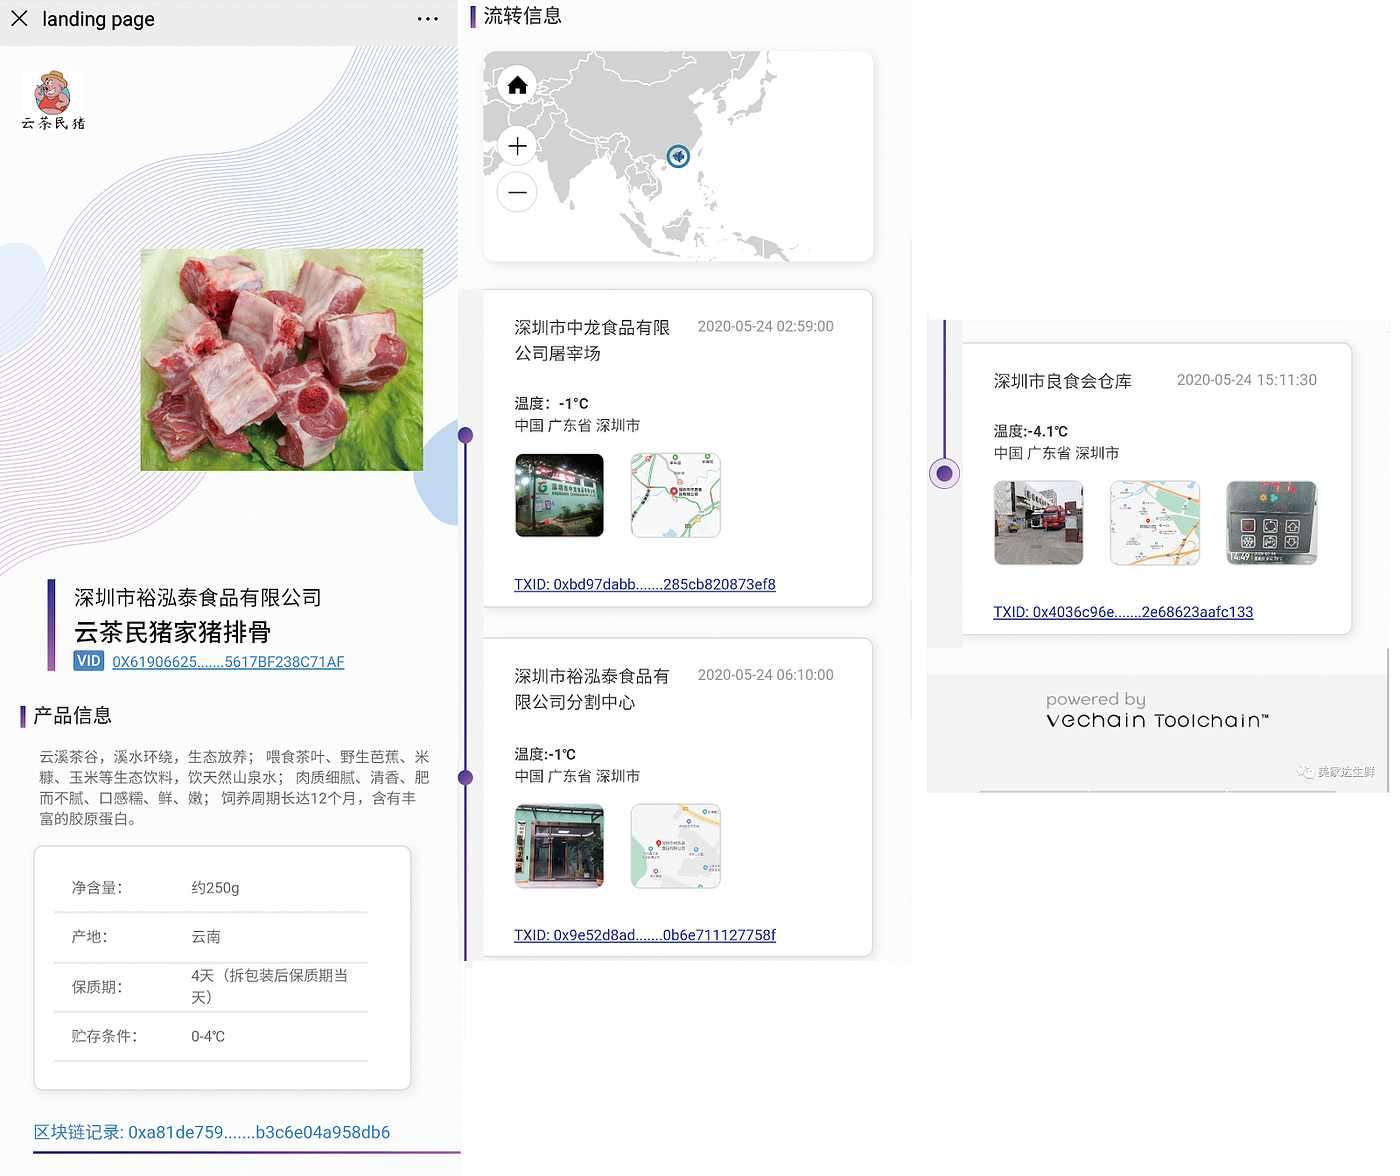 VeChain จับมือบริษัทด้านอาหารในจีน ใช้บล็อกเชนตรวจสอบเนื้อหมูแบบย้อนกลับ